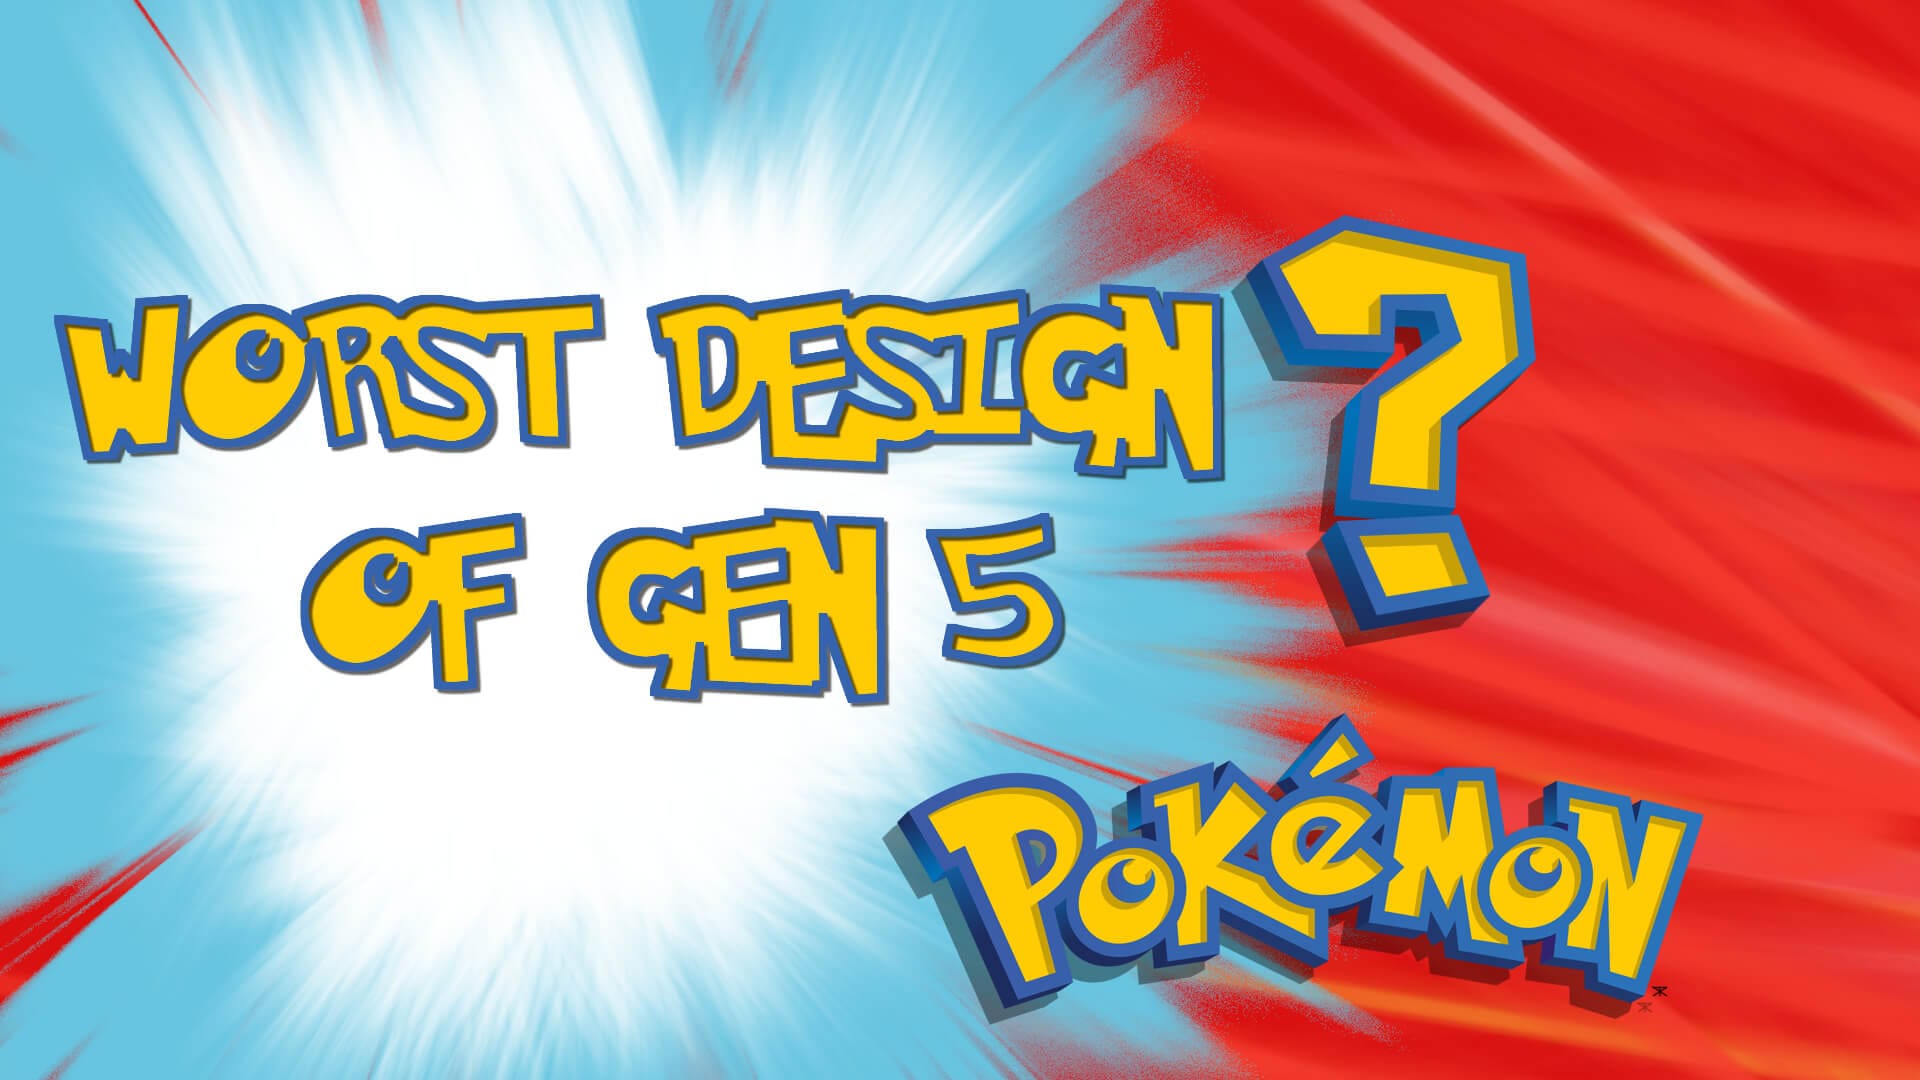 Pokémon - Generation V Pokémon